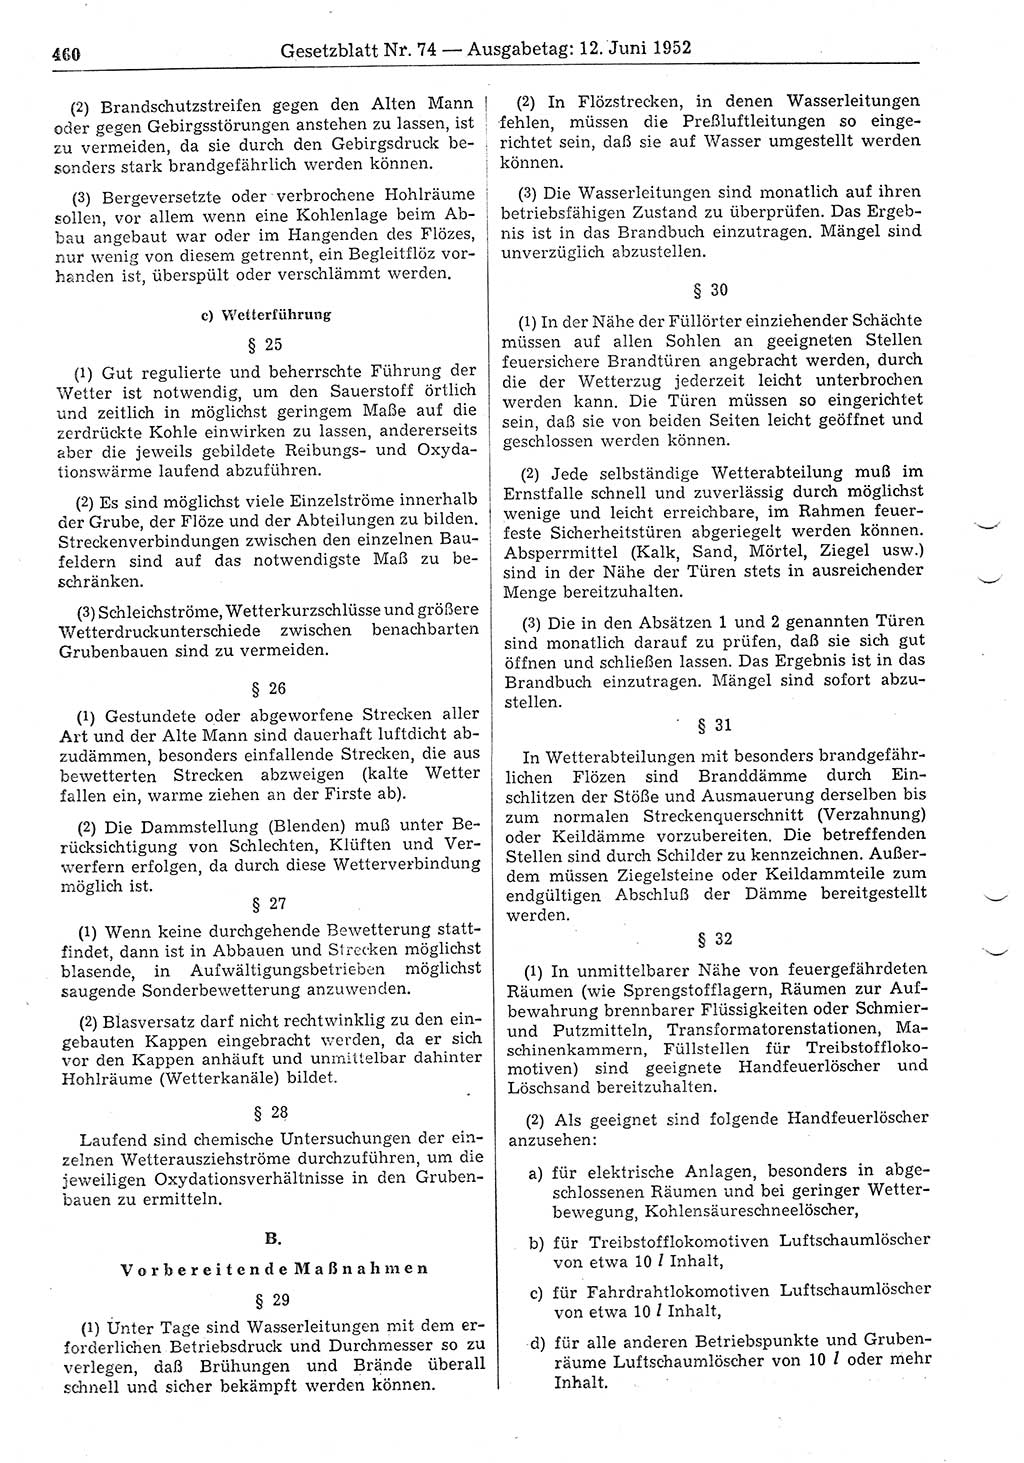 Gesetzblatt (GBl.) der Deutschen Demokratischen Republik (DDR) 1952, Seite 460 (GBl. DDR 1952, S. 460)